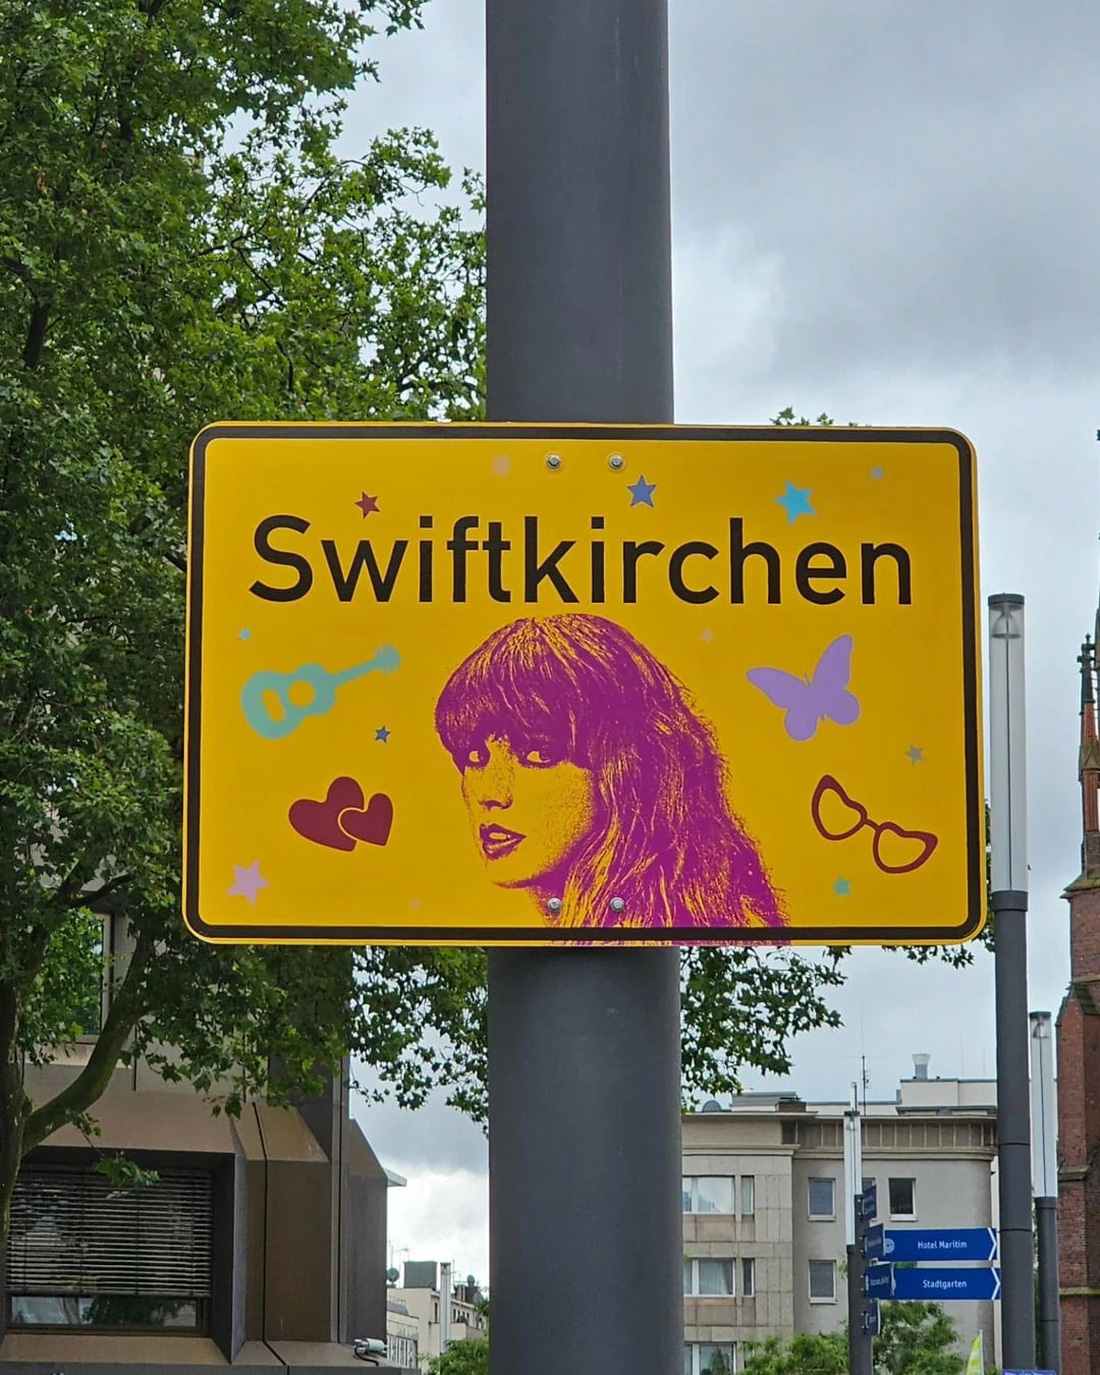 Biển báo Swiftkirchen được treo ở thành phố Gelsenkirchen để chào đón Taylor Swift